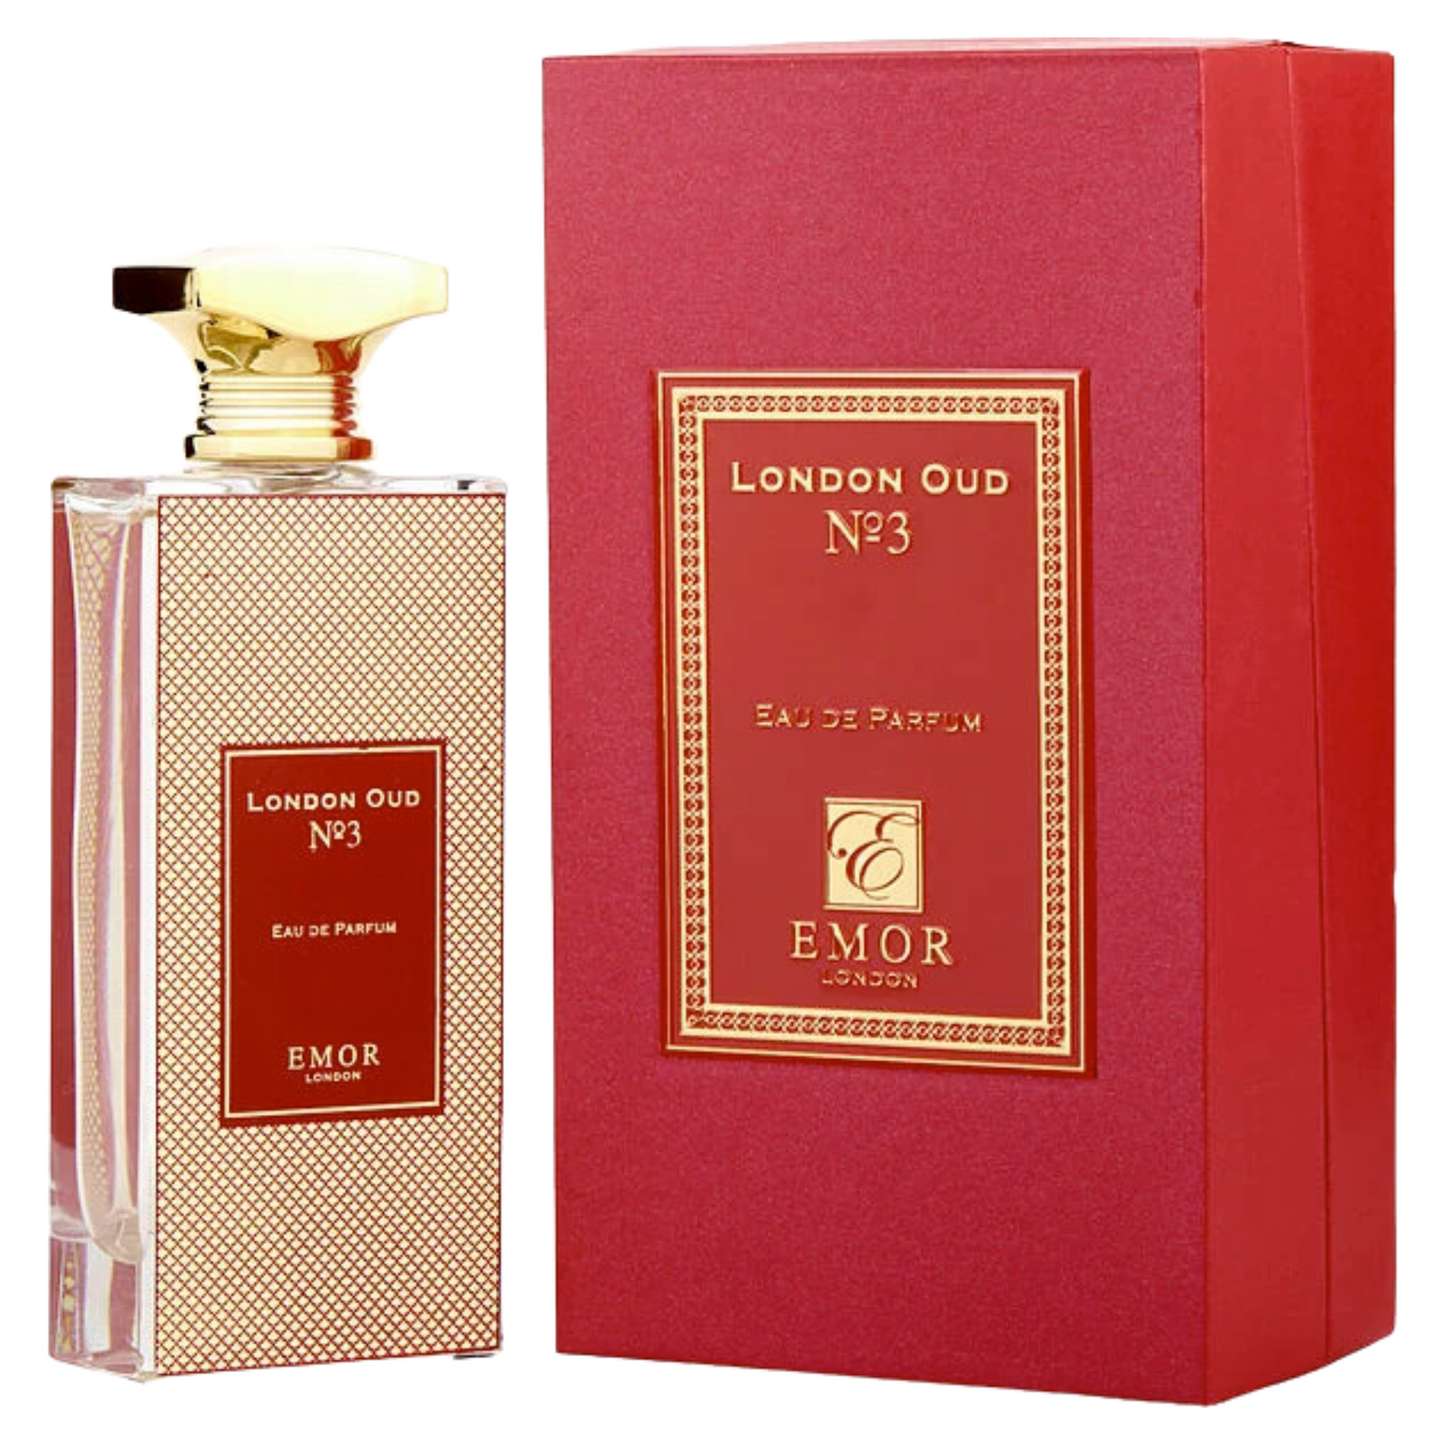 Perfume Unisex EMOR LONDON OUD N.3 125ml EDP